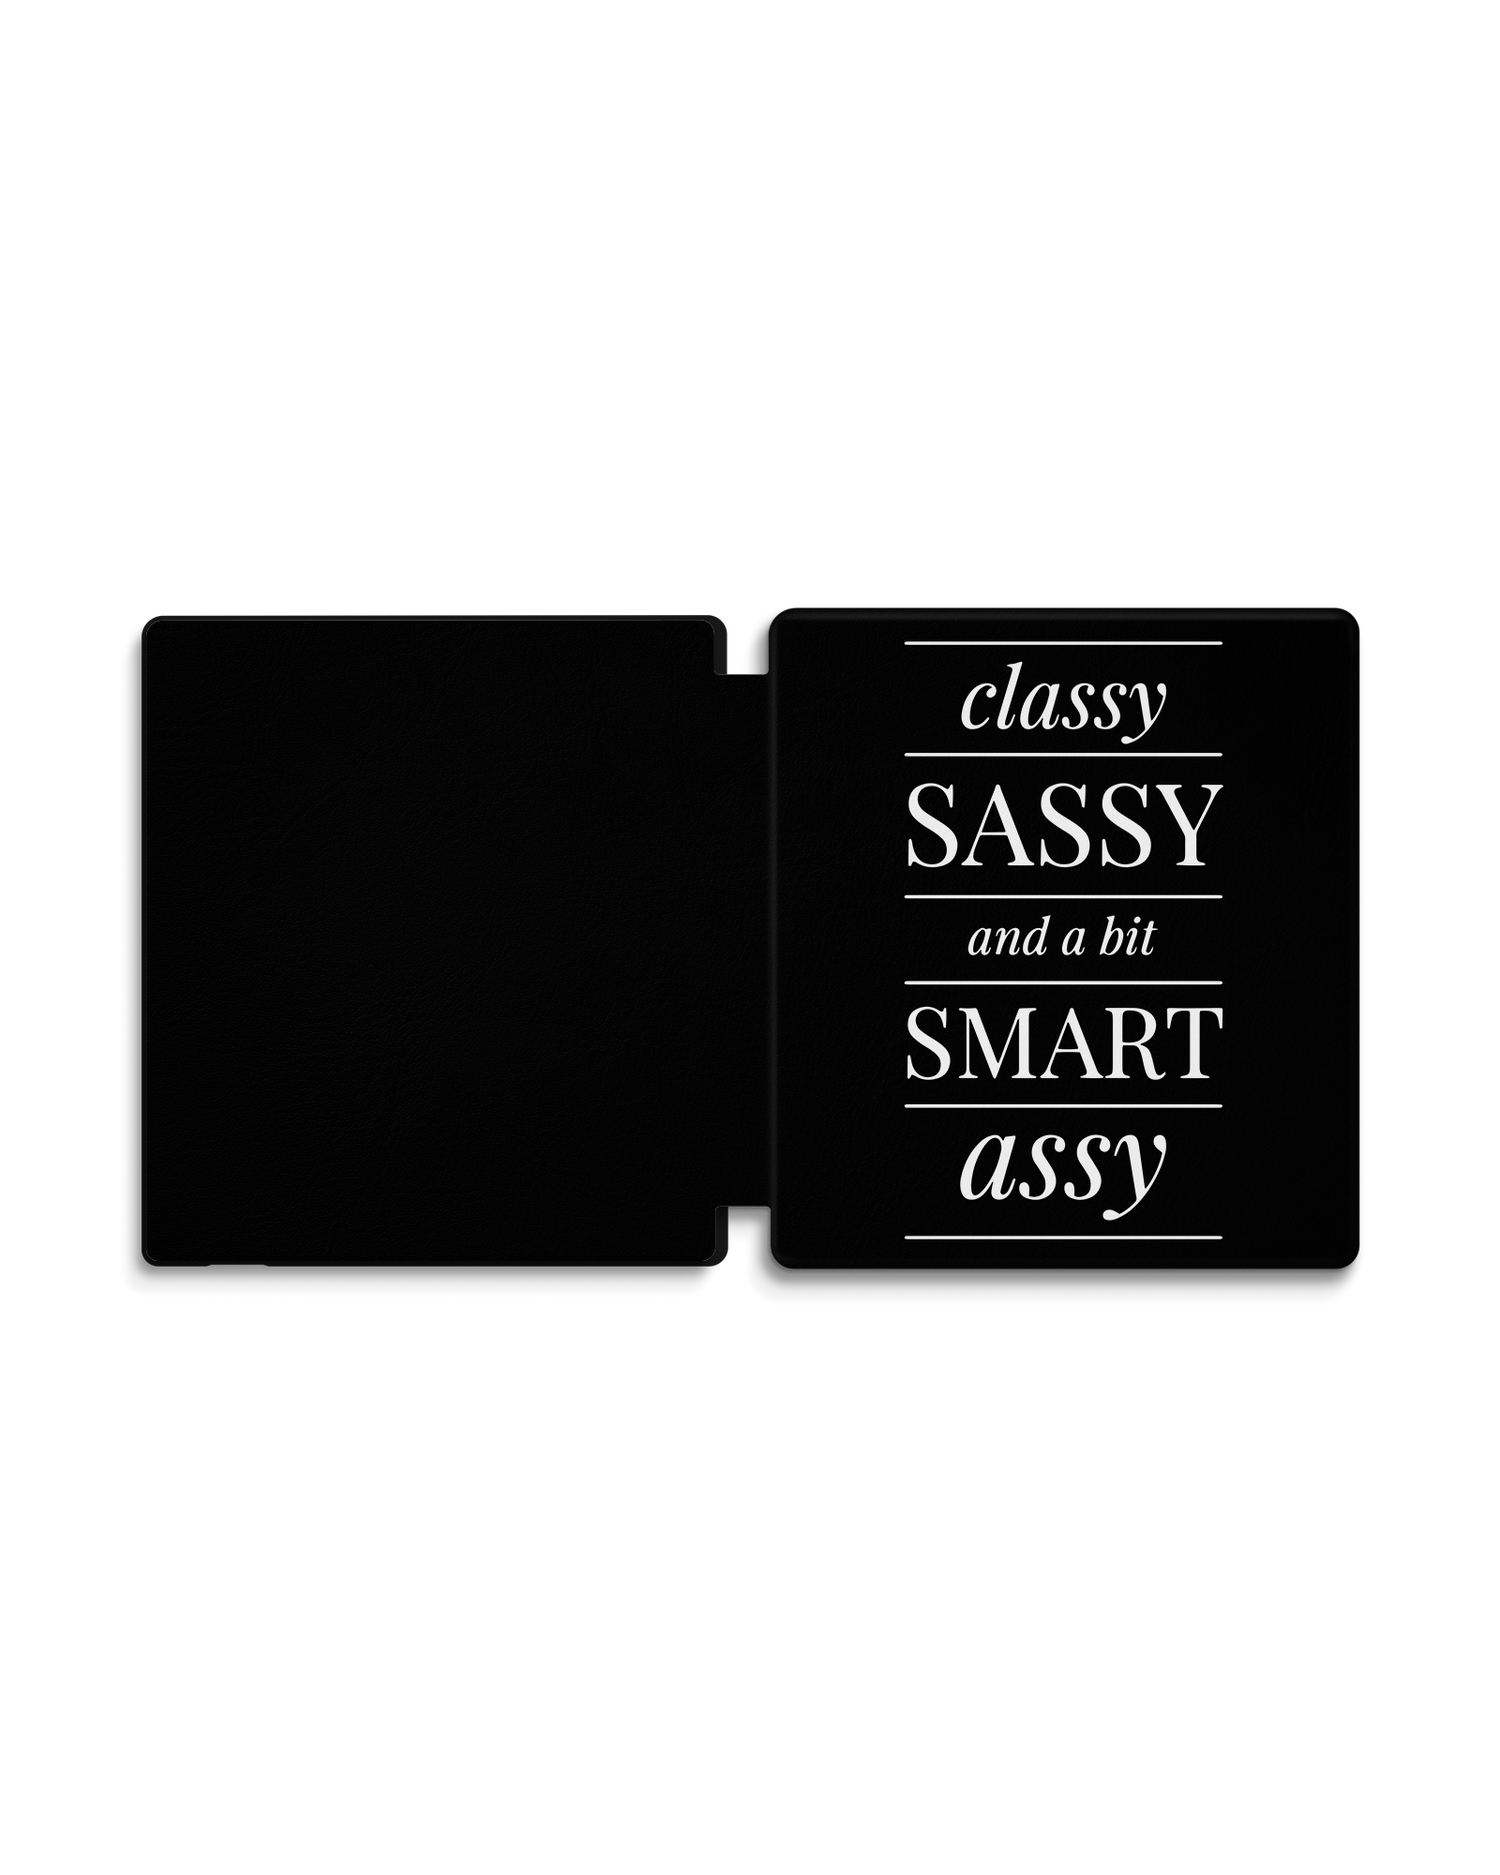 Classy Sassy eBook Reader Smart Case für Amazon Kindle Oasis: Geöffnet Außenansicht